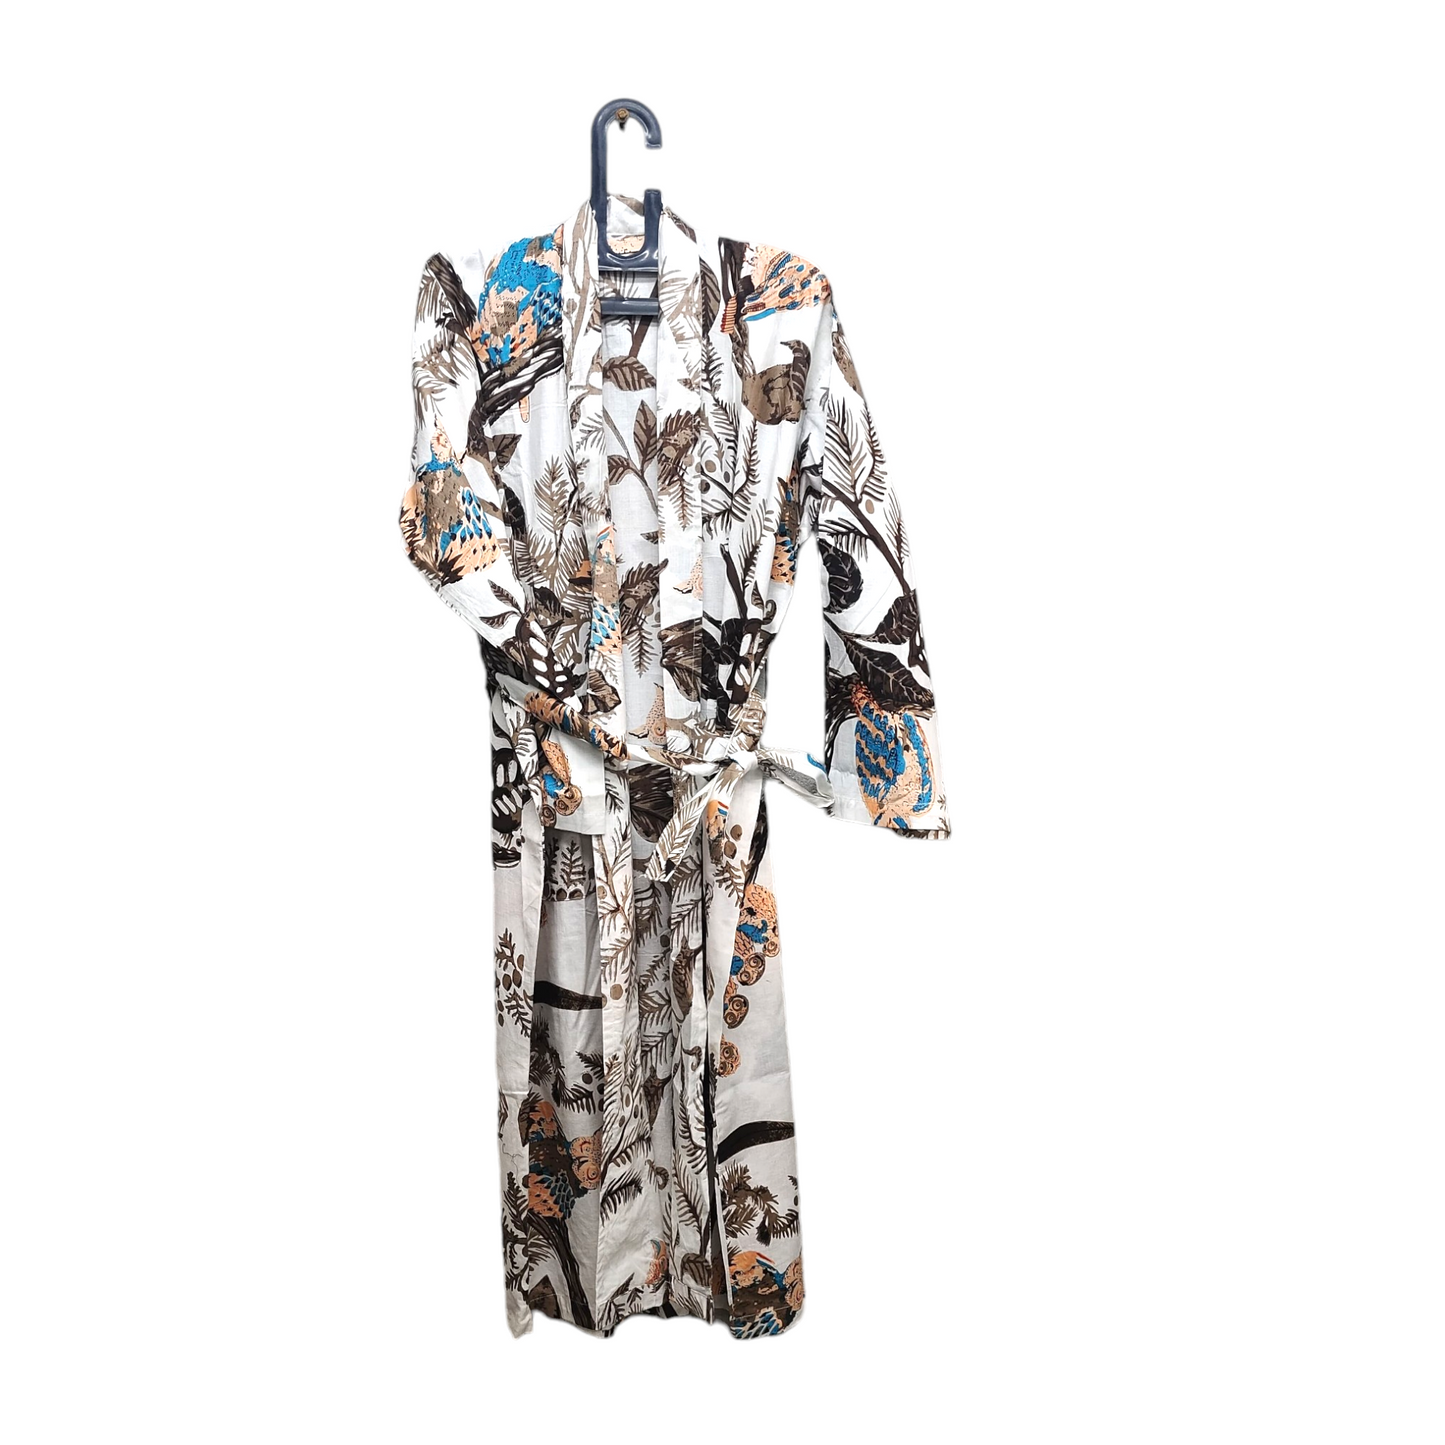 Kimono Bath Robes/ Night Suit - Owl Family Brown